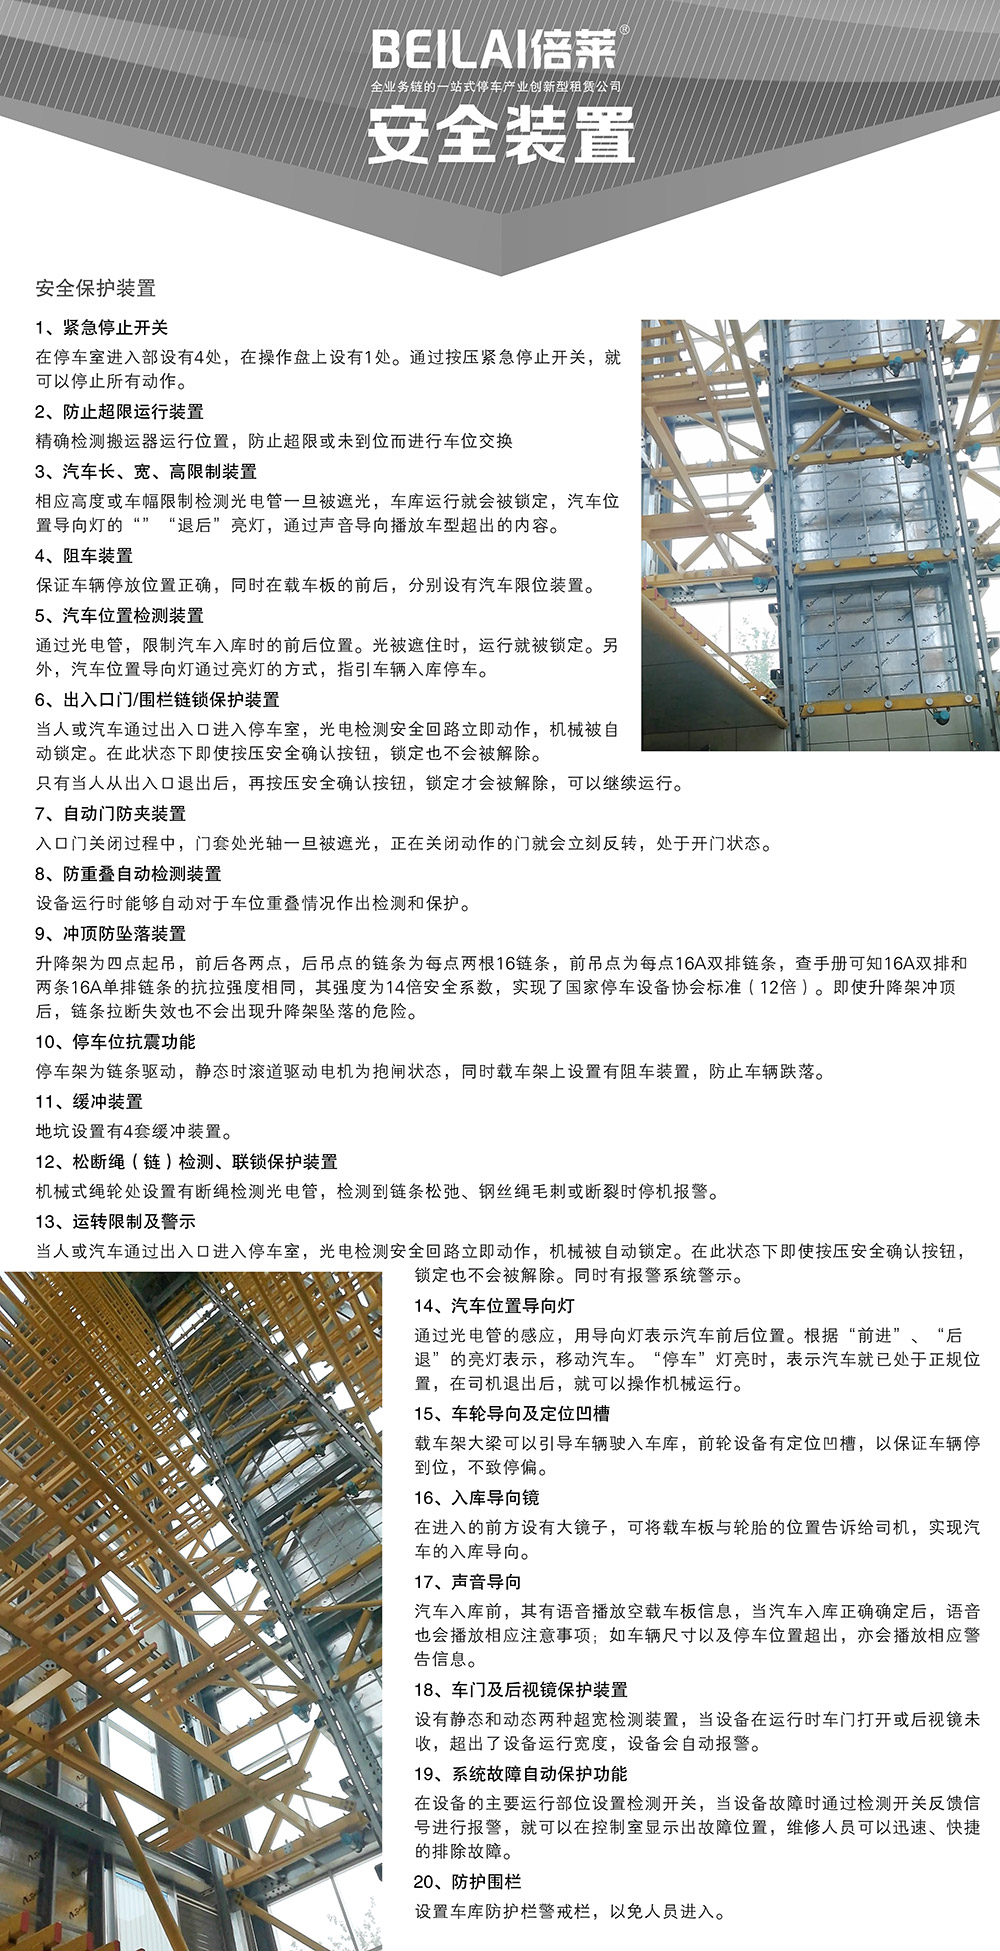 重庆四川垂直升降立体车库安全装置.jpg